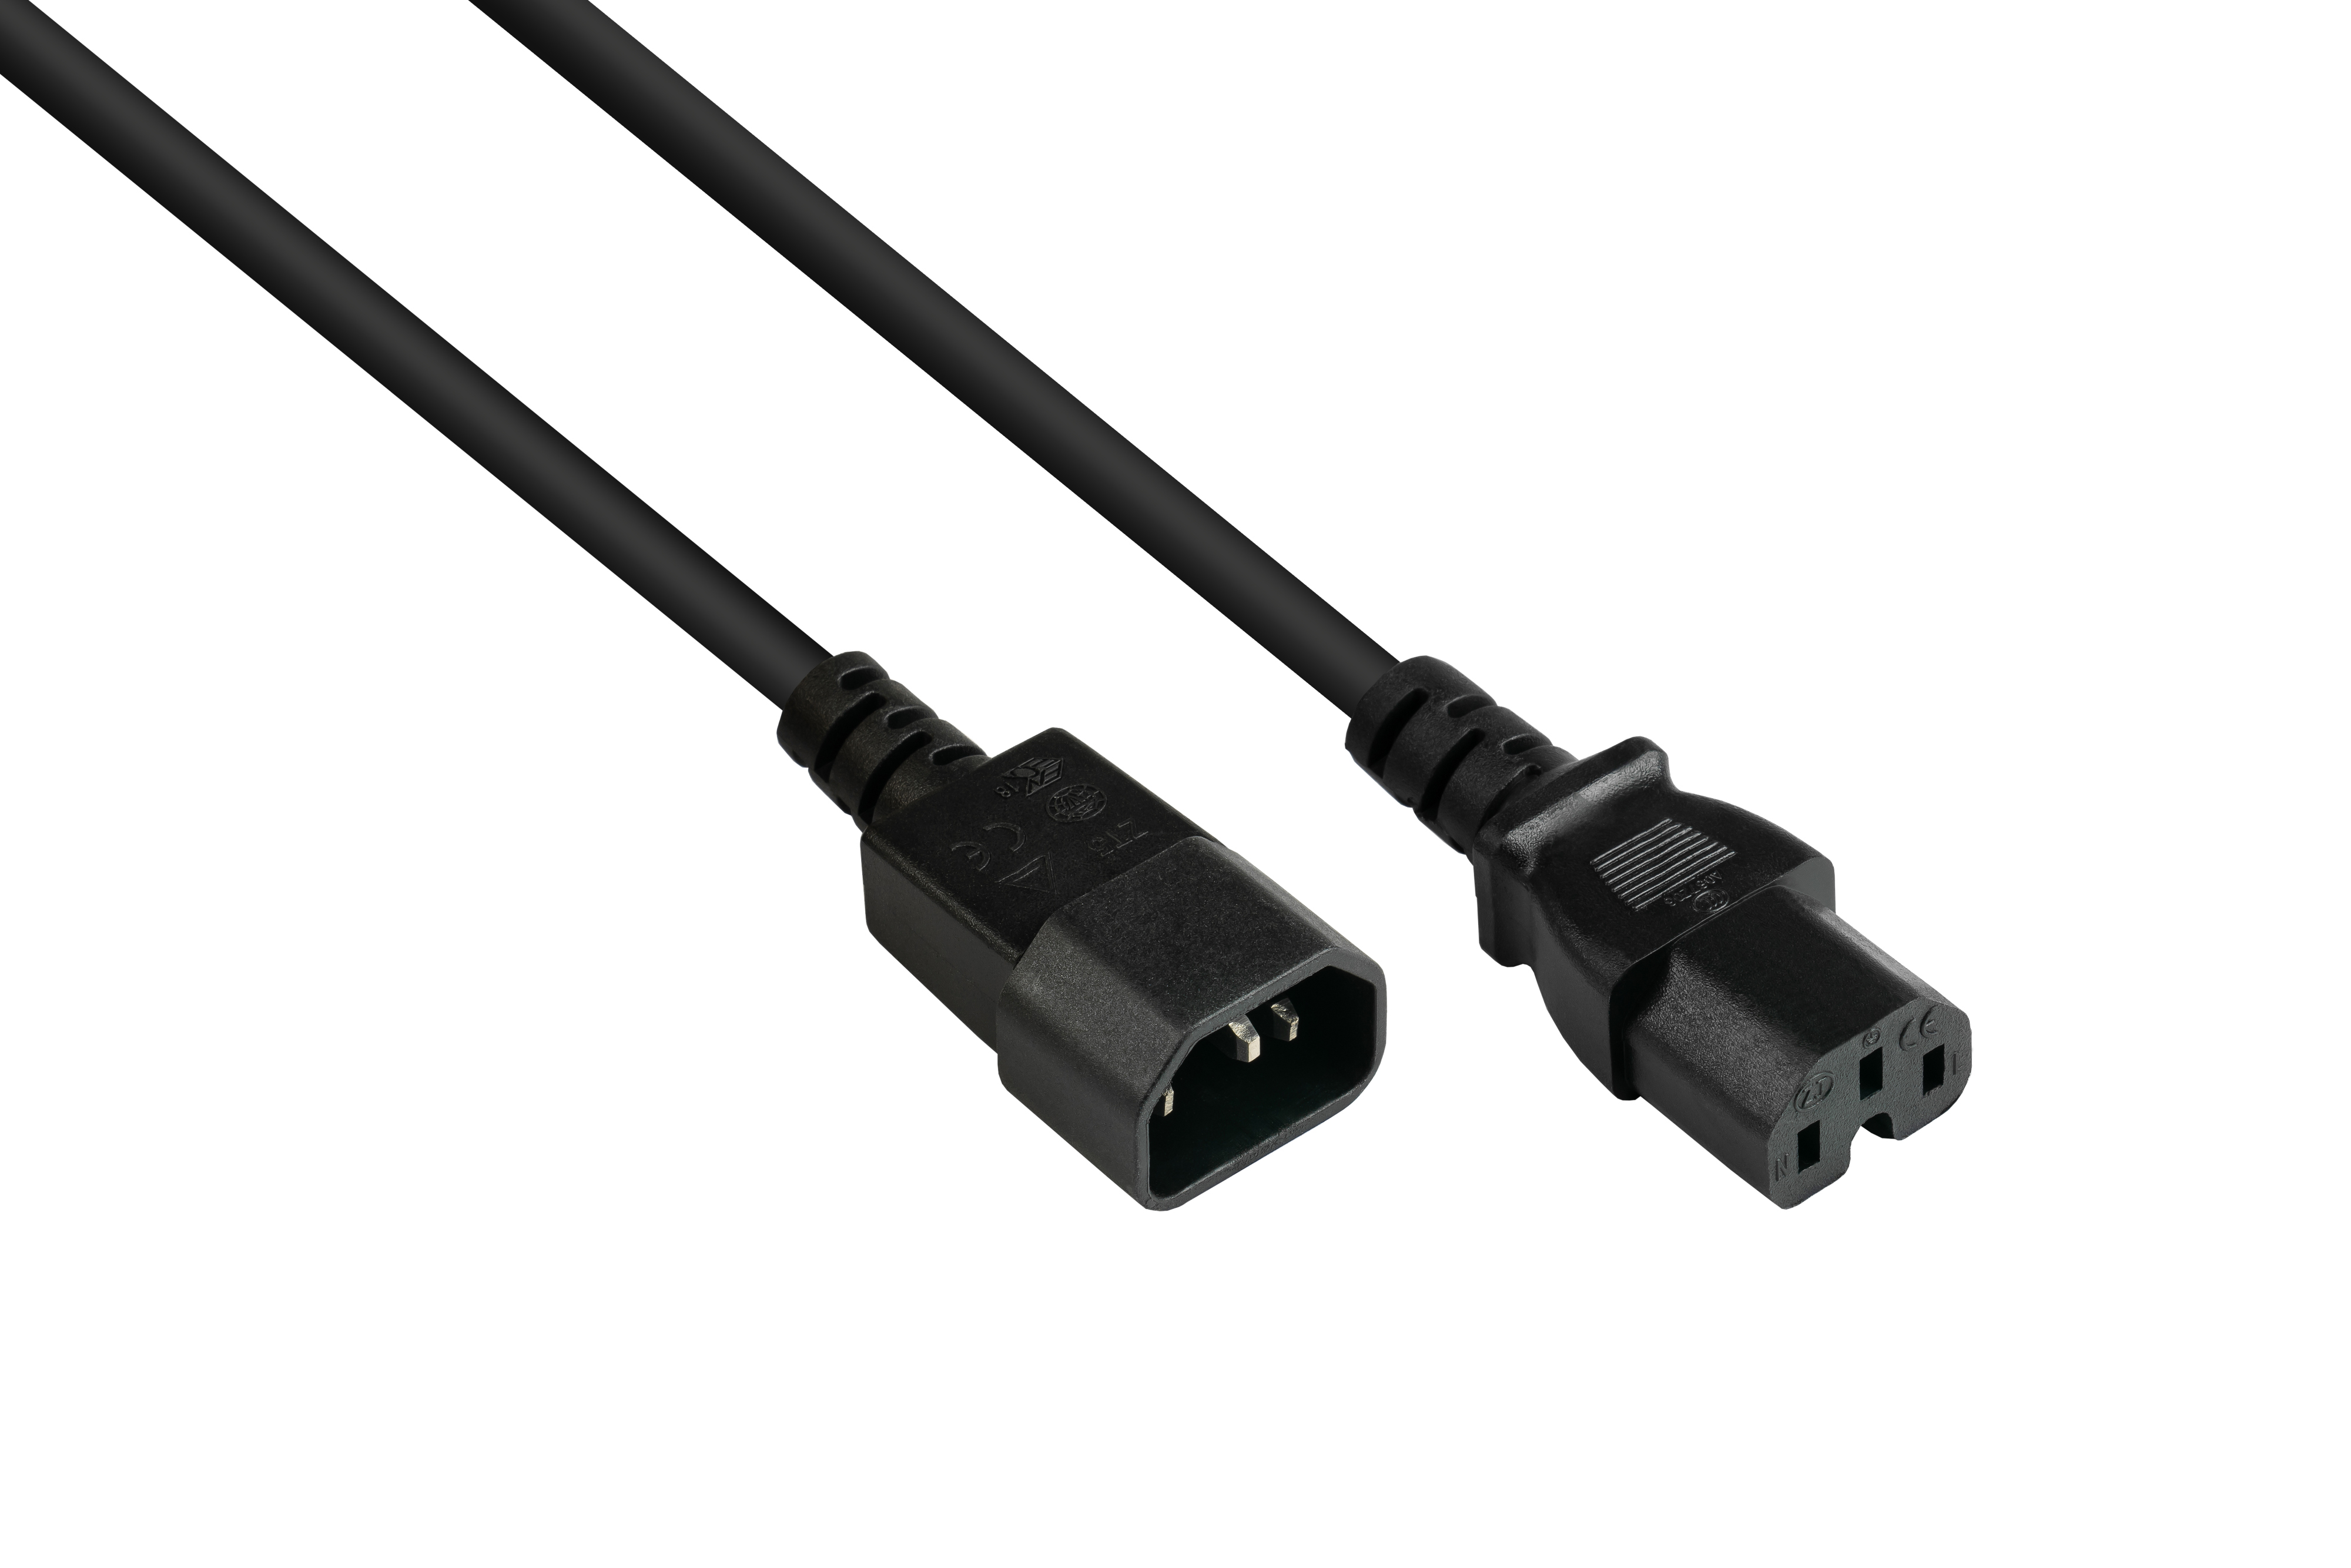 Stromkabel, CONNECTIONS (gerade), 1.00 mm² schwarz GOOD an C14 (gerade) schwarz, C15 Kaltgeräte-Warmgeräte-Verbindungskabel